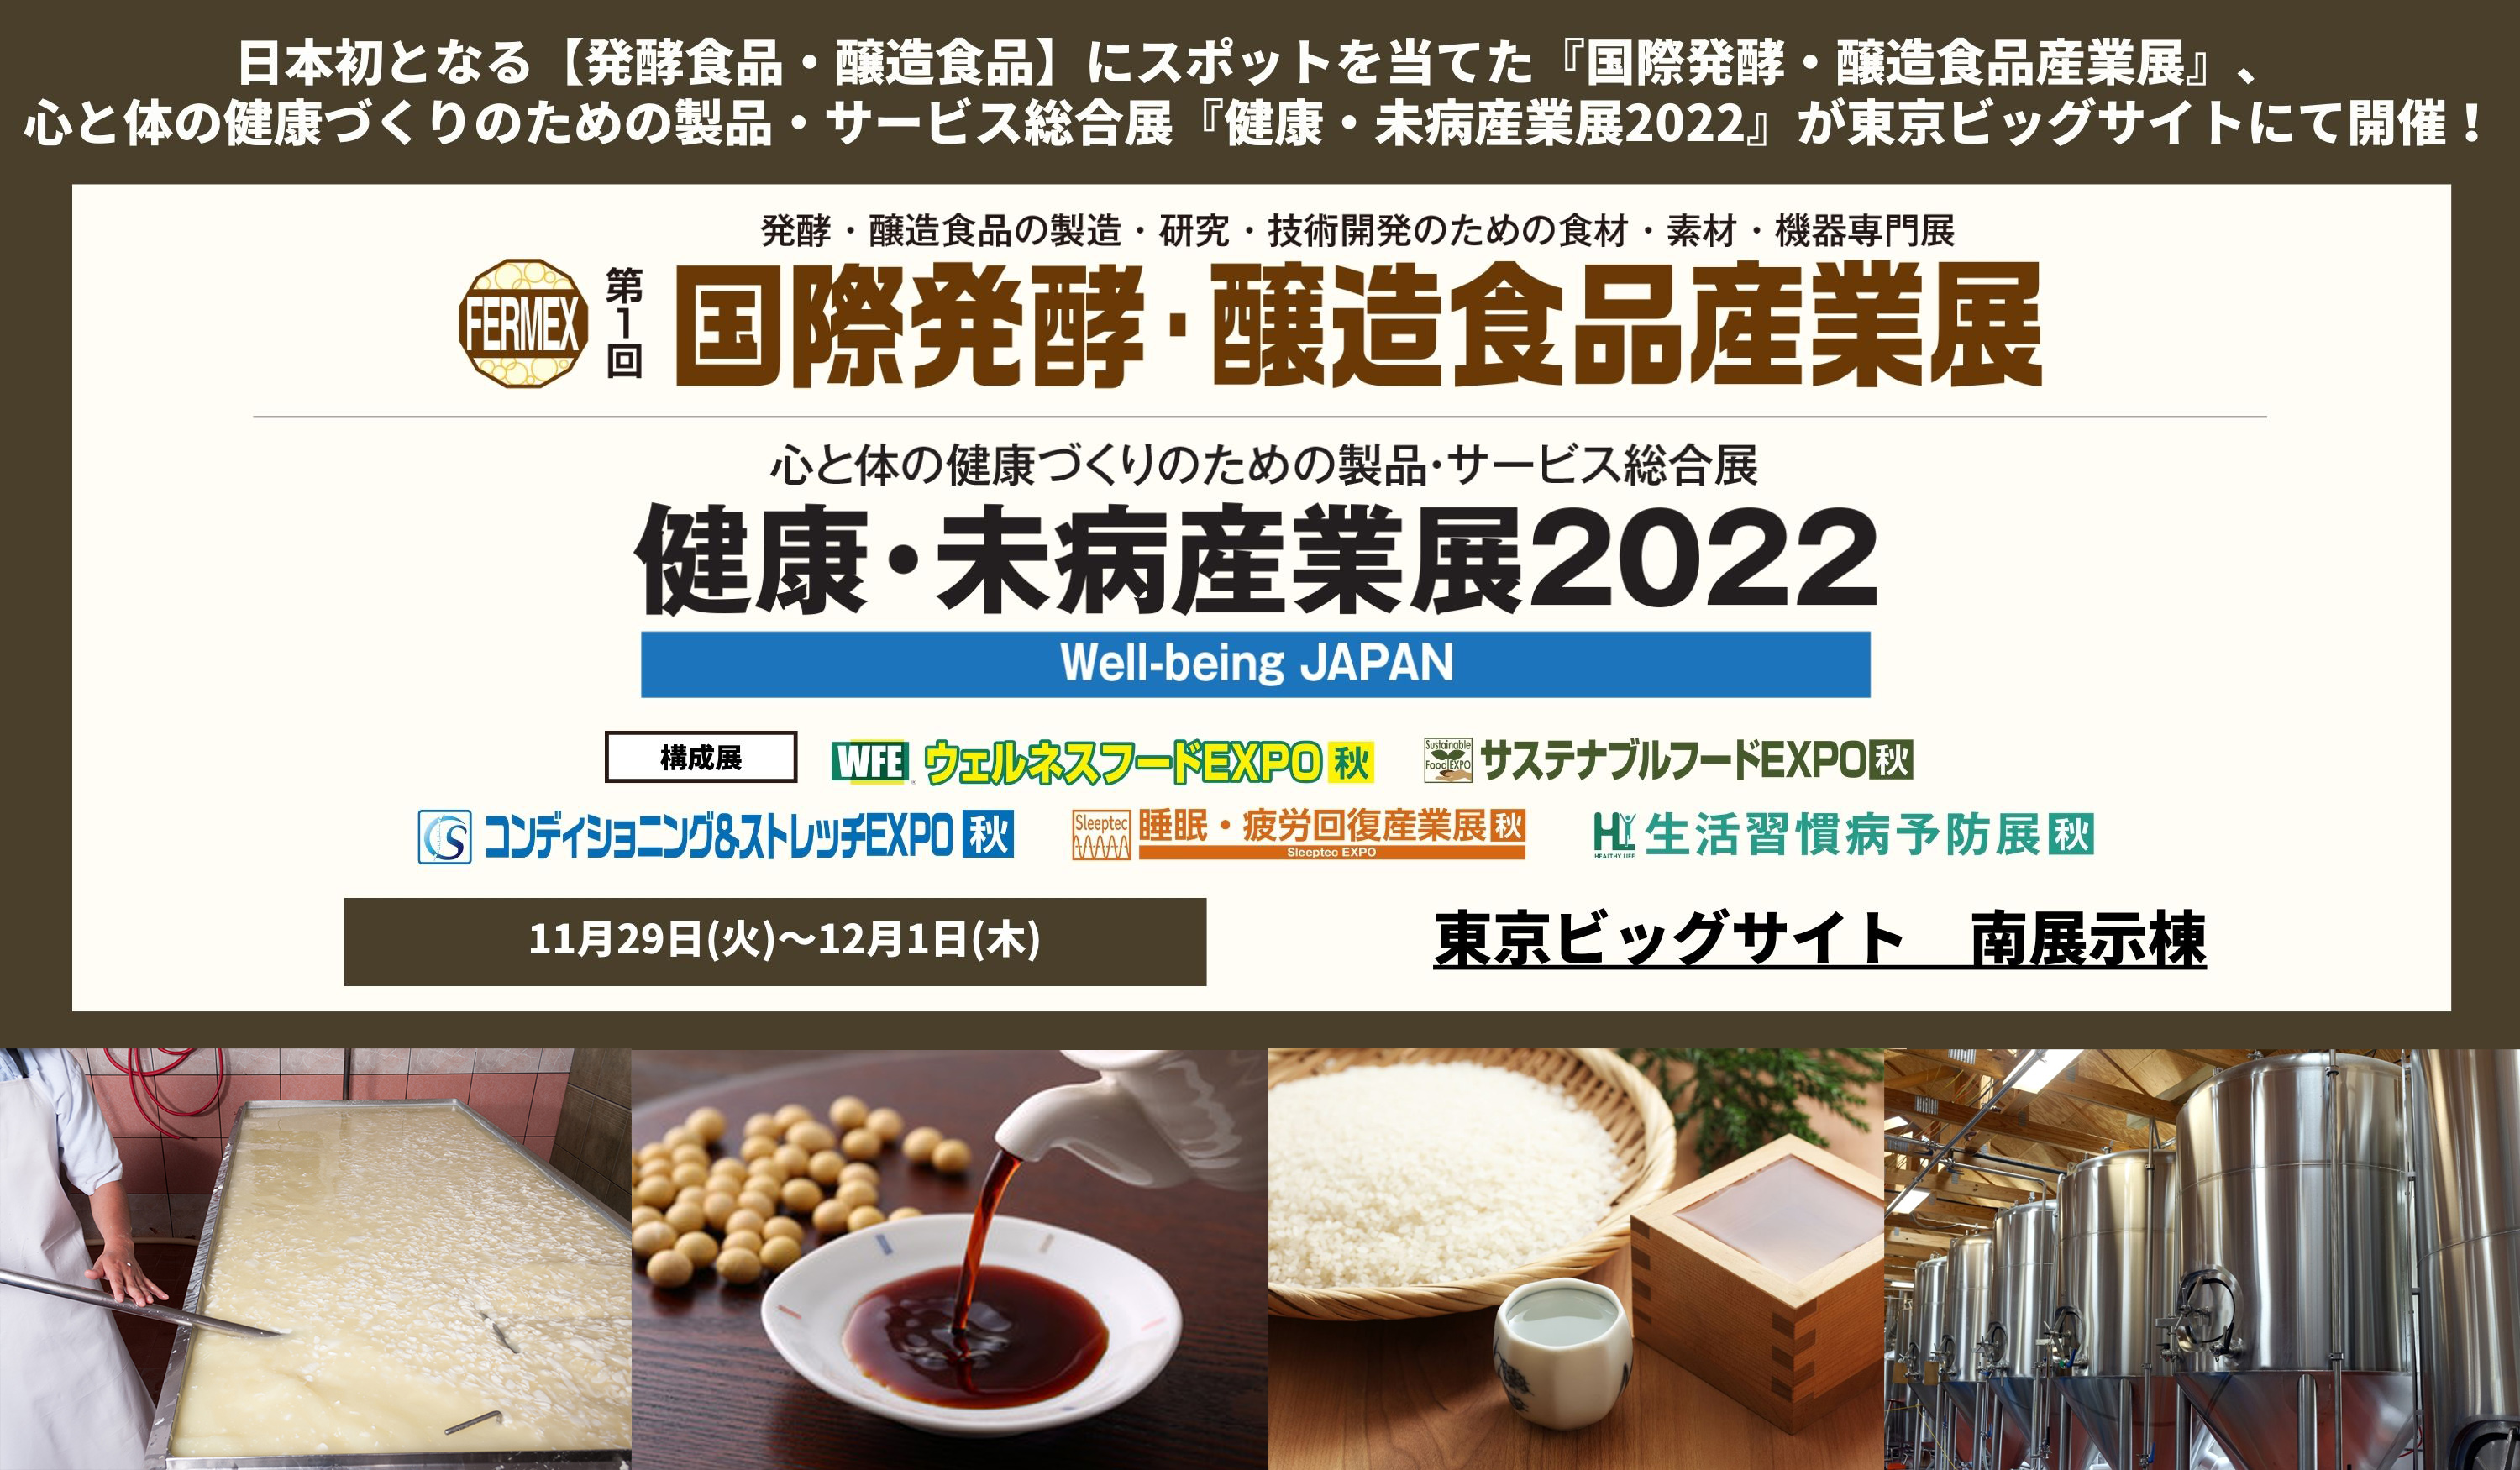 日本初*となる発酵と醸造食品に関する専門展示会『国際発酵・醸造食品